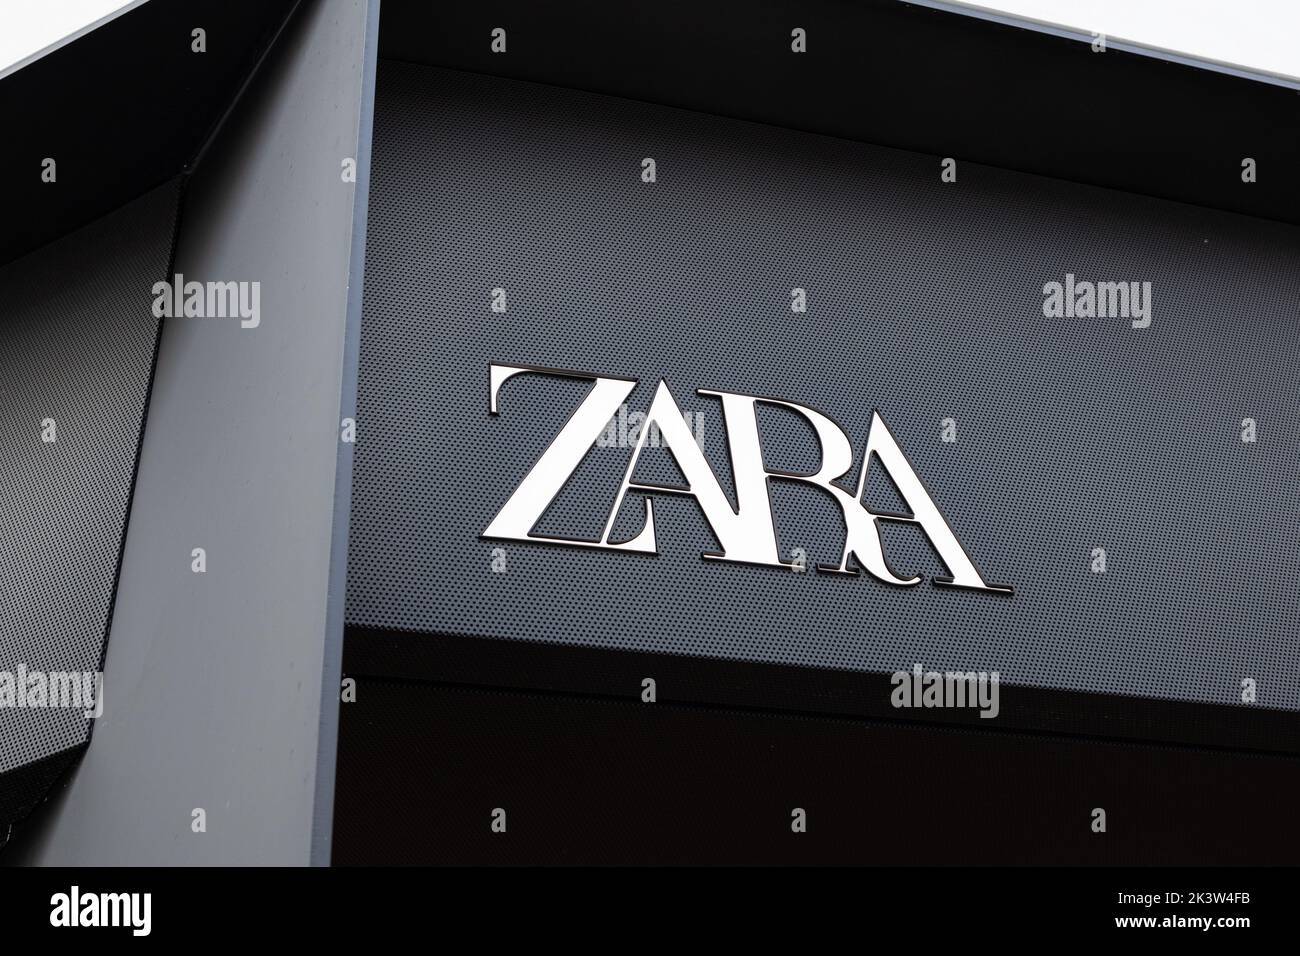 Coruna, Spain; september 23, 2022: New Zara sign on facade store Stock Photo